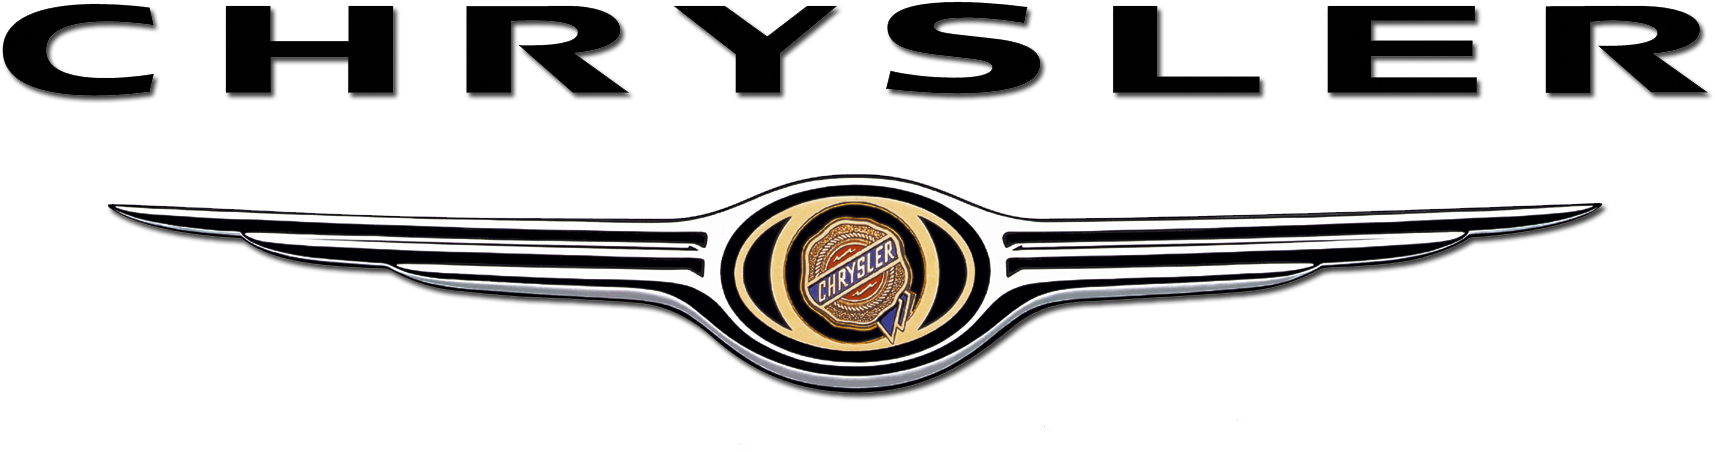 473 In Chrysler - Chrysler Logo Transparent Png (1736x473), Png Download